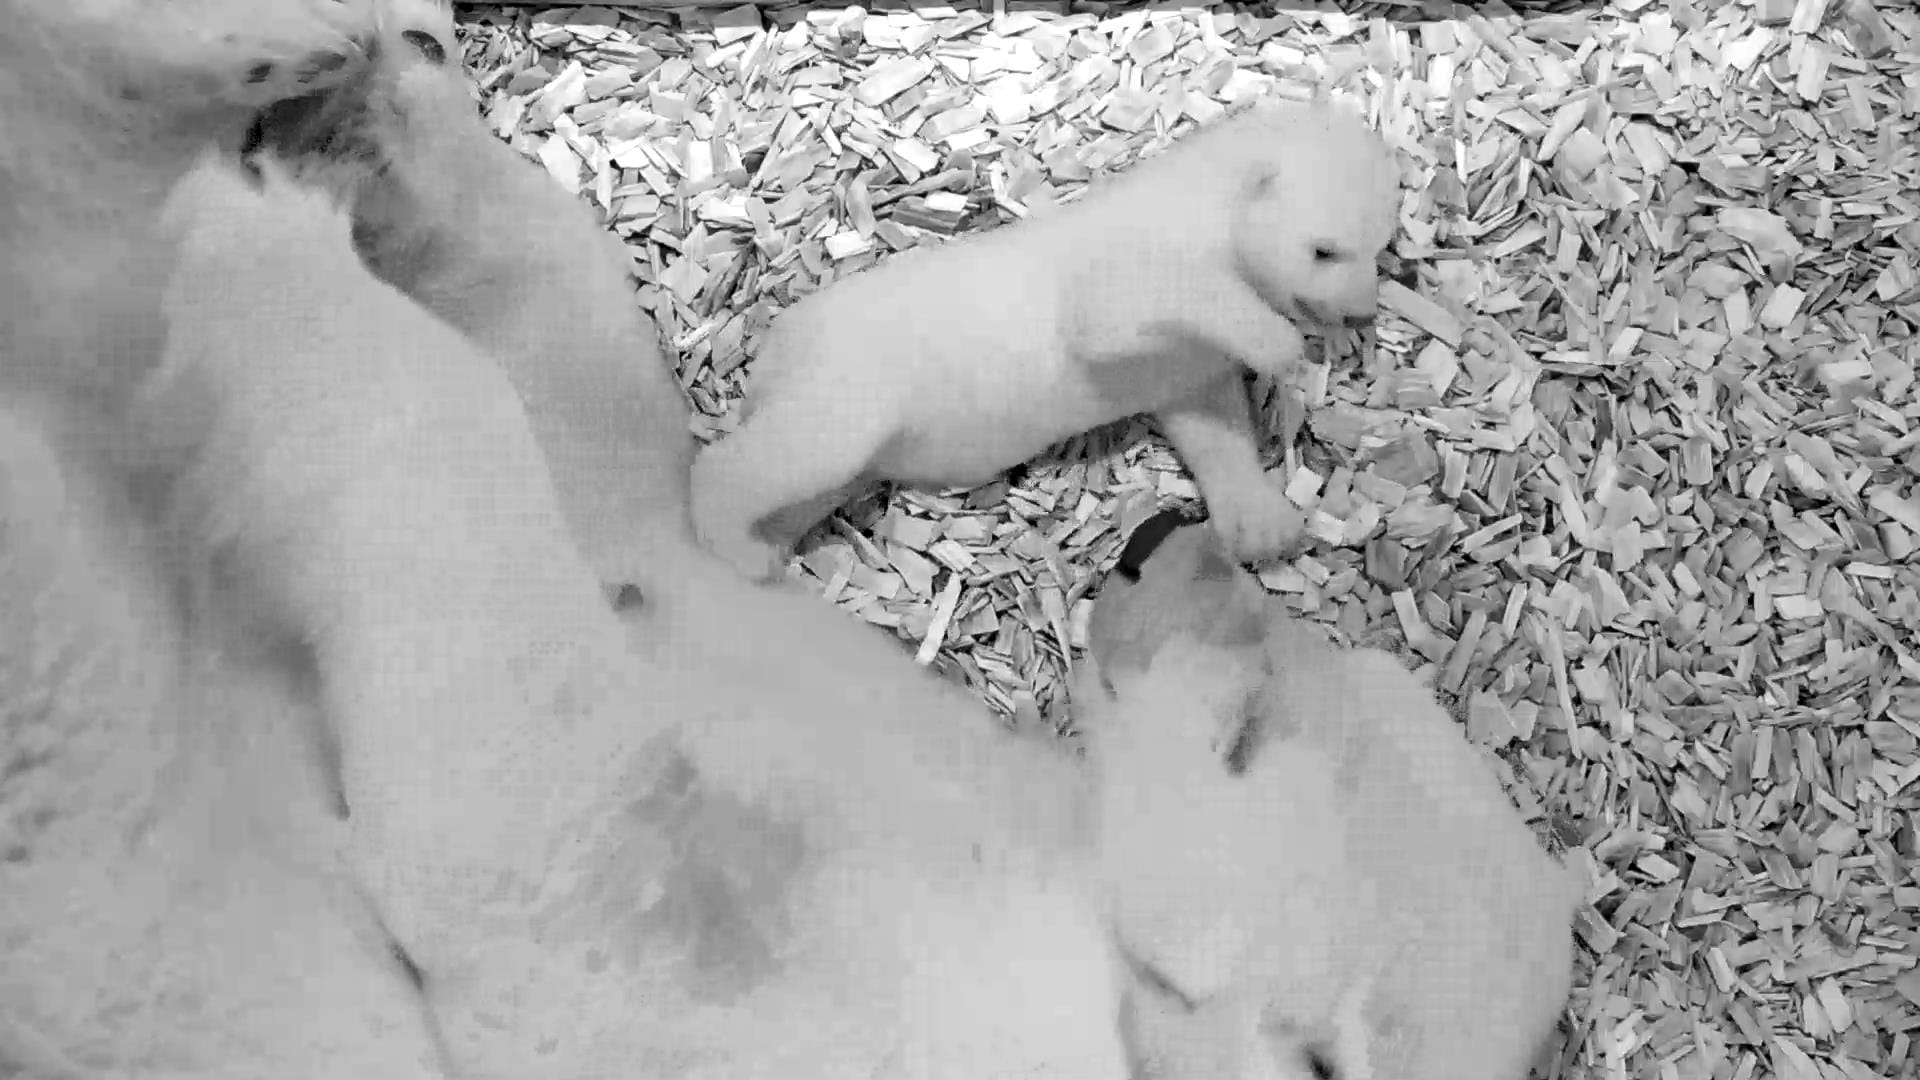 Noch fällt das Laufen schwer – hier liegt das Eisbärenbaby auf Streu an seiner Mutter. Dass die Tiere etwas bräuchten, um laufen zu lernen, sei aber ganz normal, sagt Tierparkdirektor Knieriem.